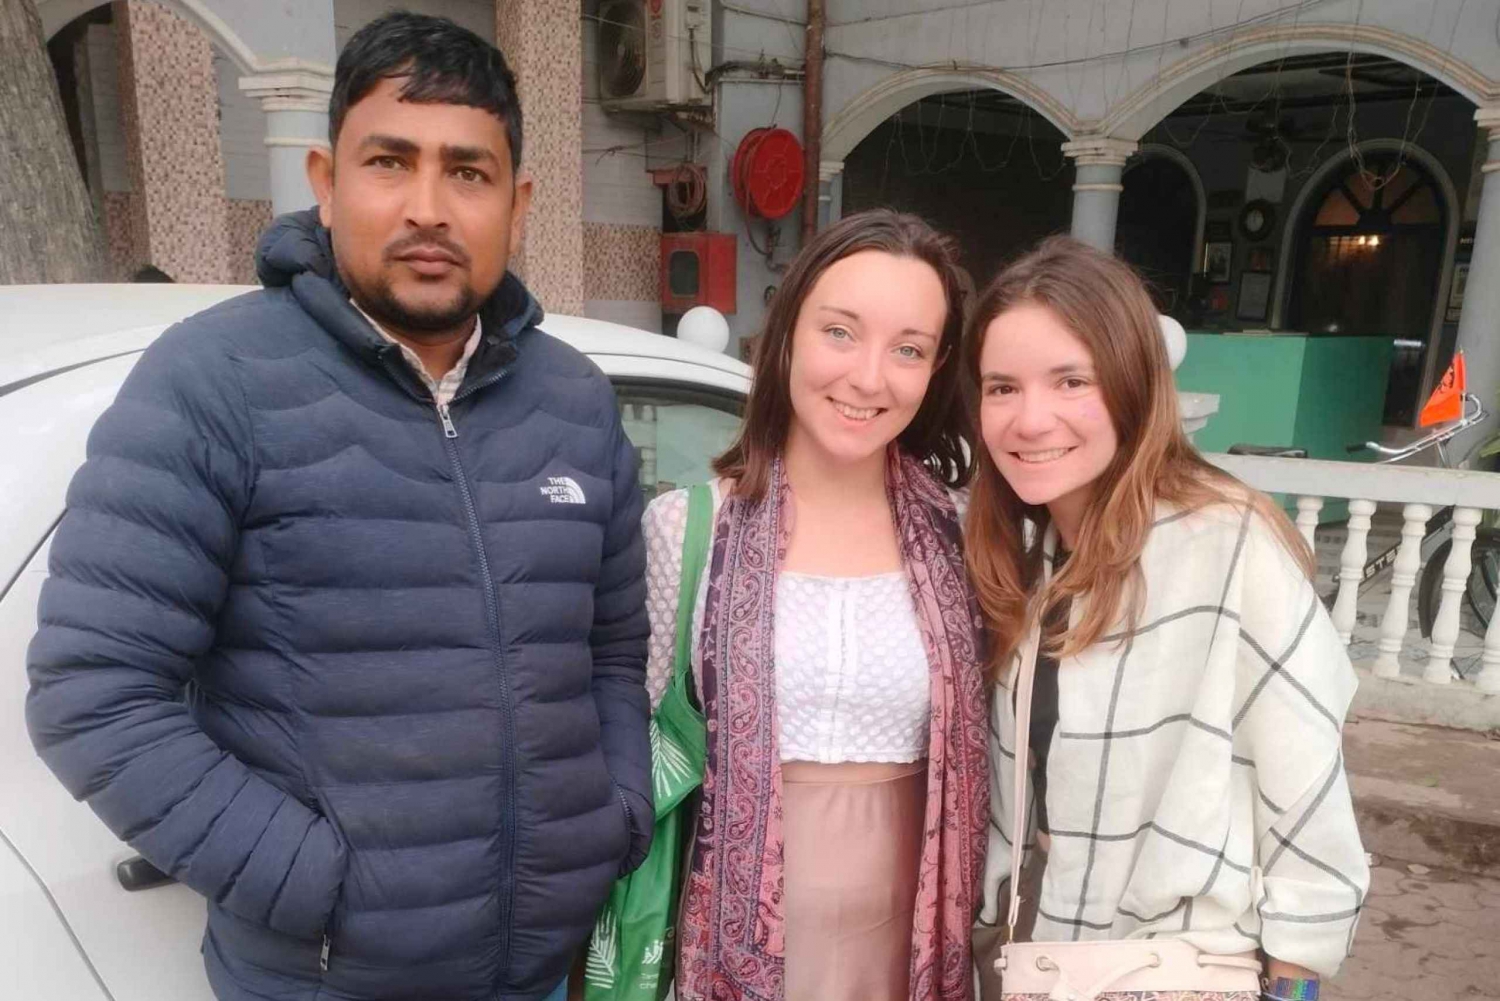 Wycieczka z przewodnikiem po Złotym Trójkącie Delhi Agra Jaipur